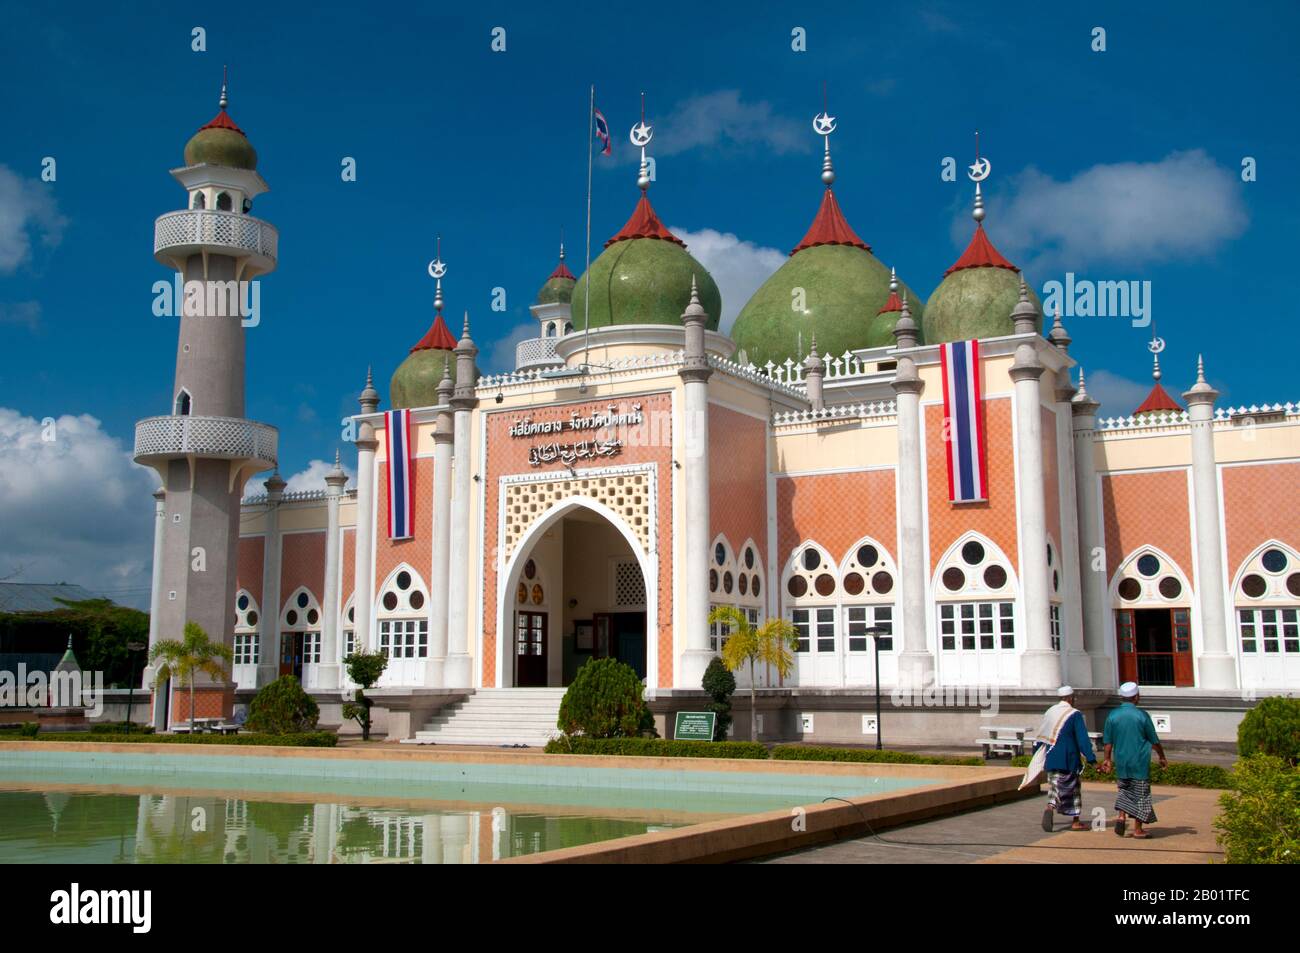 Thailandia: Matsayit Klang o Moschea centrale, Pattani, Thailandia meridionale. La Matsayit Klang è stata costruita negli anni '1960 ed è la seconda moschea più grande della Thailandia. Pattani, fondata nel XV secolo, era una volta la capitale di un sultanato indipendente di lingua malese. Oggi è il cuore spirituale e la città più importante della regione musulmana malese del profondo Sud della Thailandia. Circa il 75% della popolazione è musulmano di lingua malese (le cifre sono contestate), e la città e la regione sono al centro dell'attuale instabilità politica che ha disturbato le province di confine del profondo Sud. Foto Stock